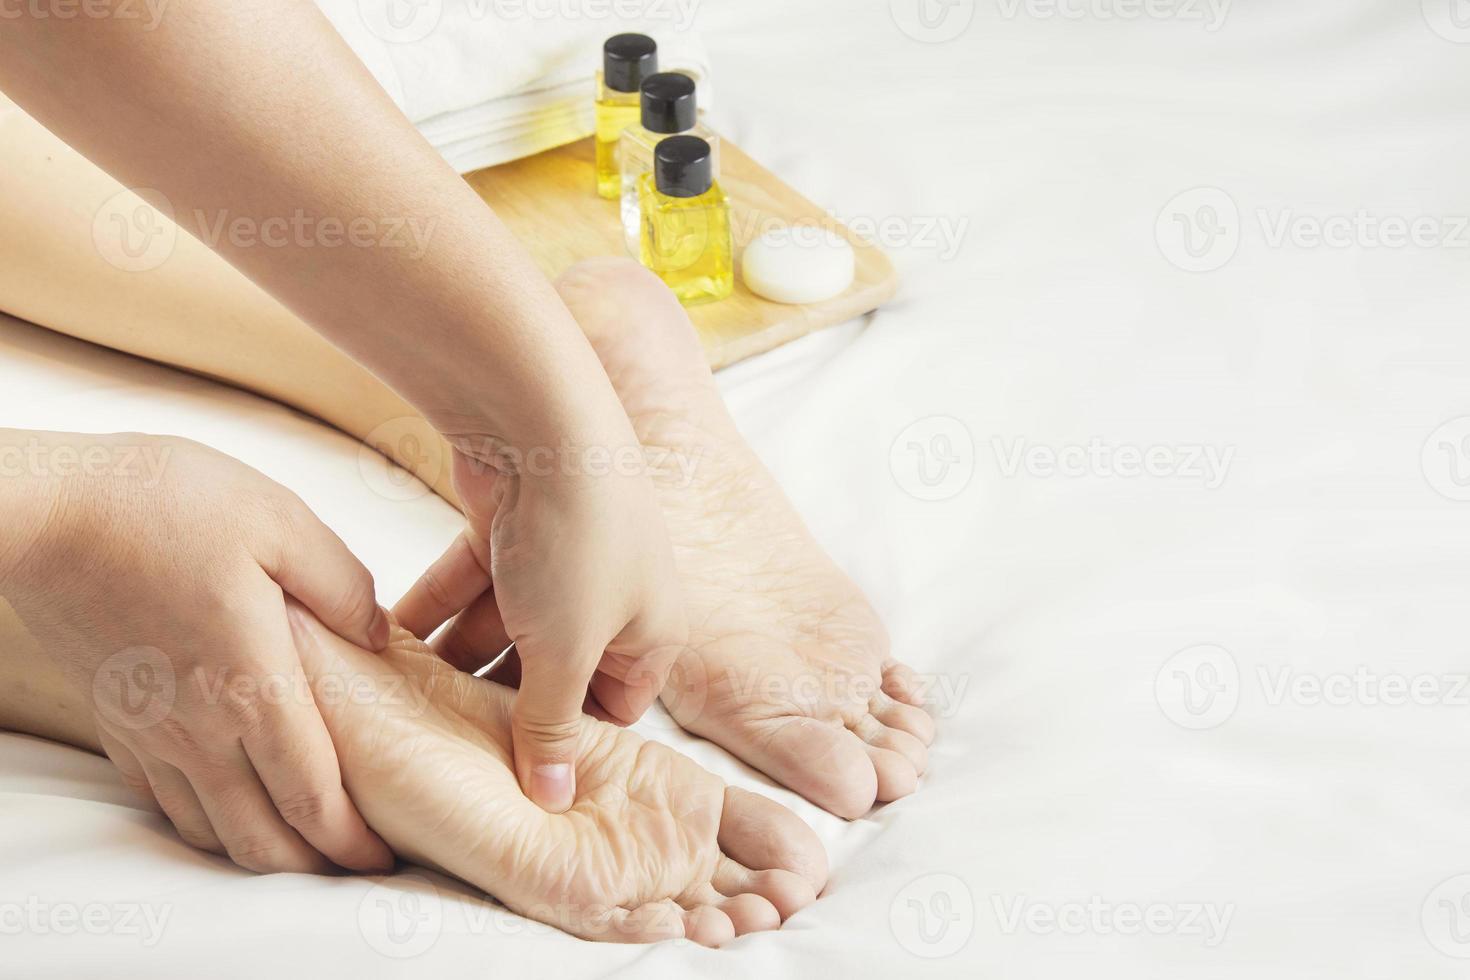 händer av en professionell fot massager med oljor och hälsa vård Produkter på vit säng. begrepp av hälsa vård, avslappning, fot spa behandling. eller produkt introduktion för kvinnors fot spa foto